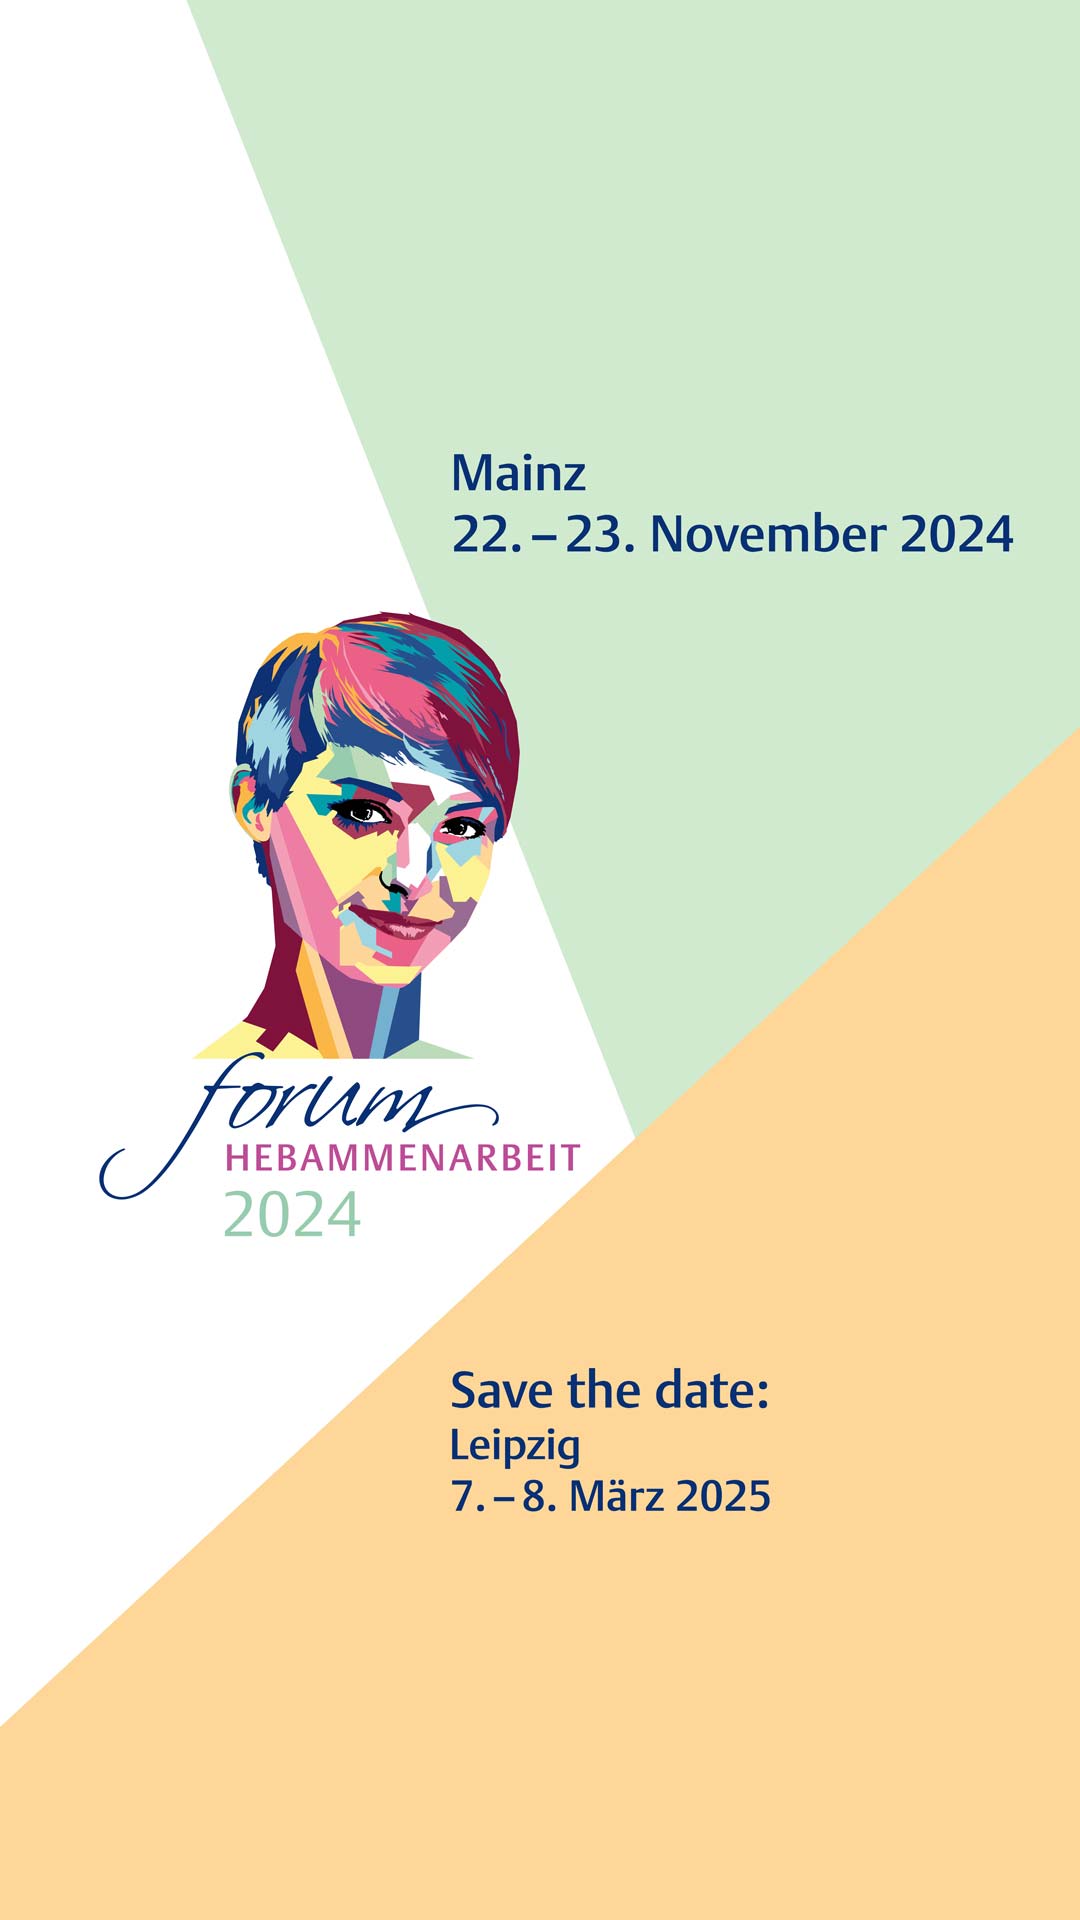 Bühne Mobile Forum Hebammenarbeit 2024-25